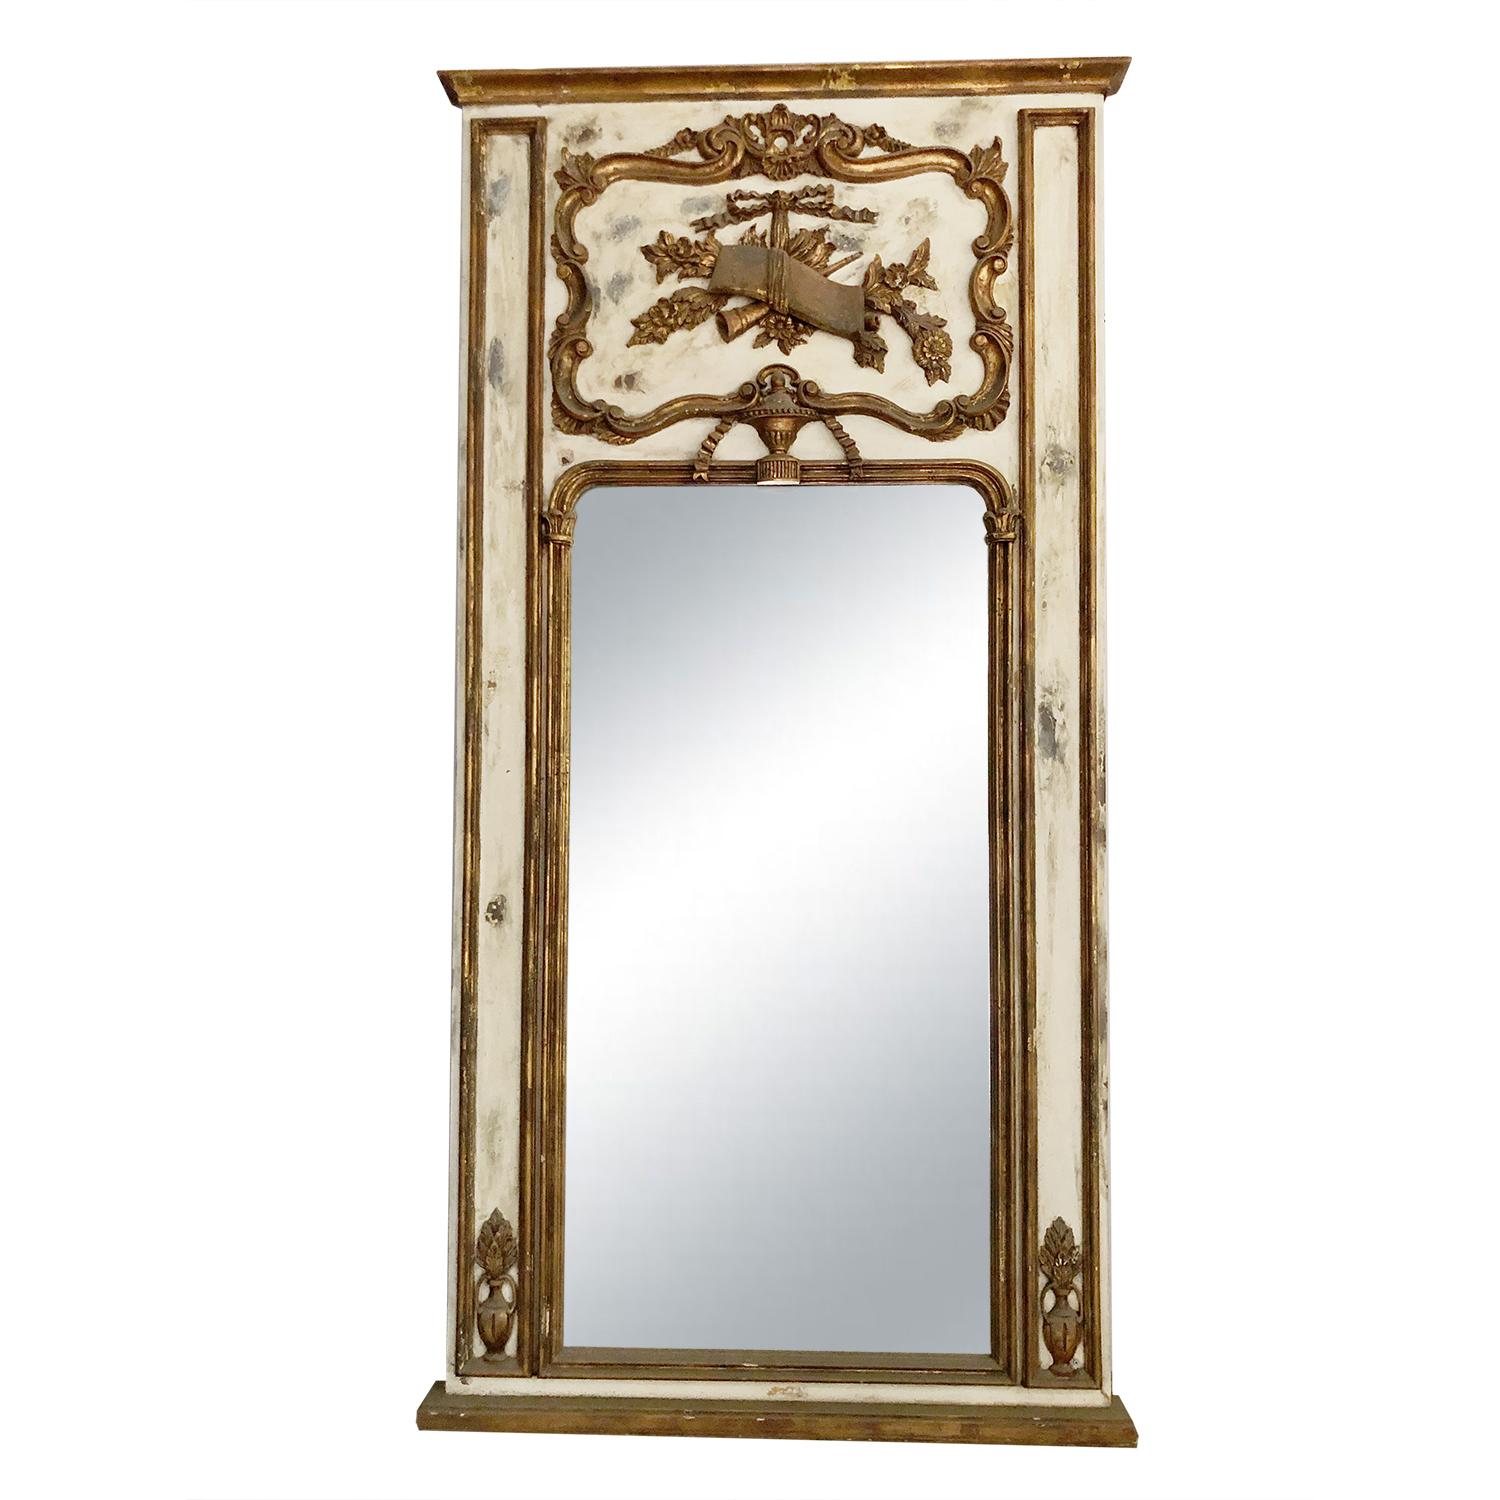 Ce miroir ancien en bois de pin doré de style Louis XV, du 19e siècle, a une finition en lavis blanc, rehaussée par des sculptures en bois très détaillées, en bon état. Le verre miroir est d'origine. Décoloration mineure due à l'âge. Usure conforme